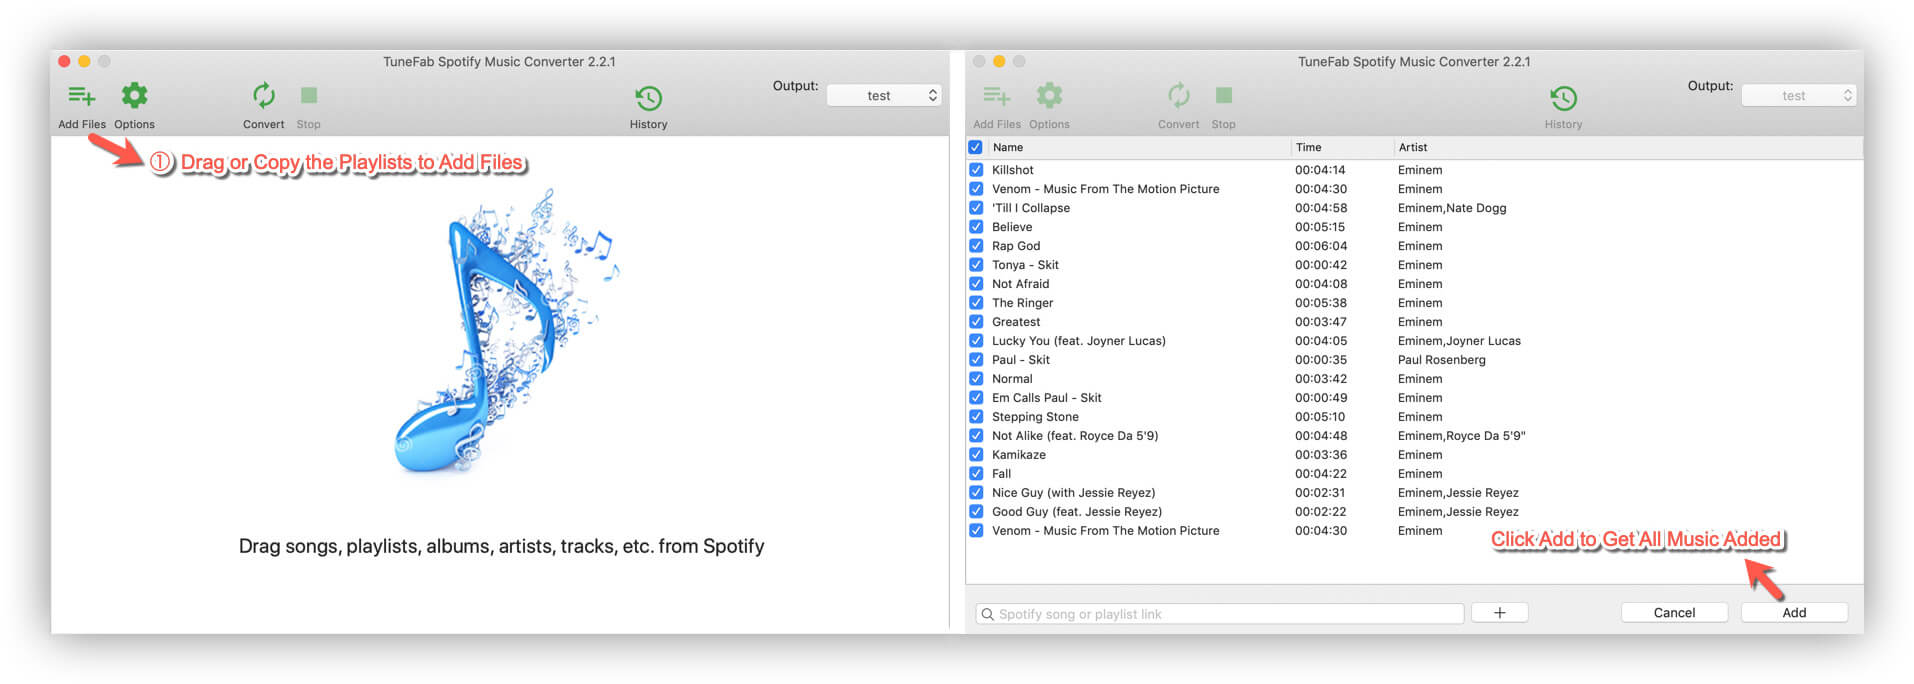 Adicionar música para Spotify